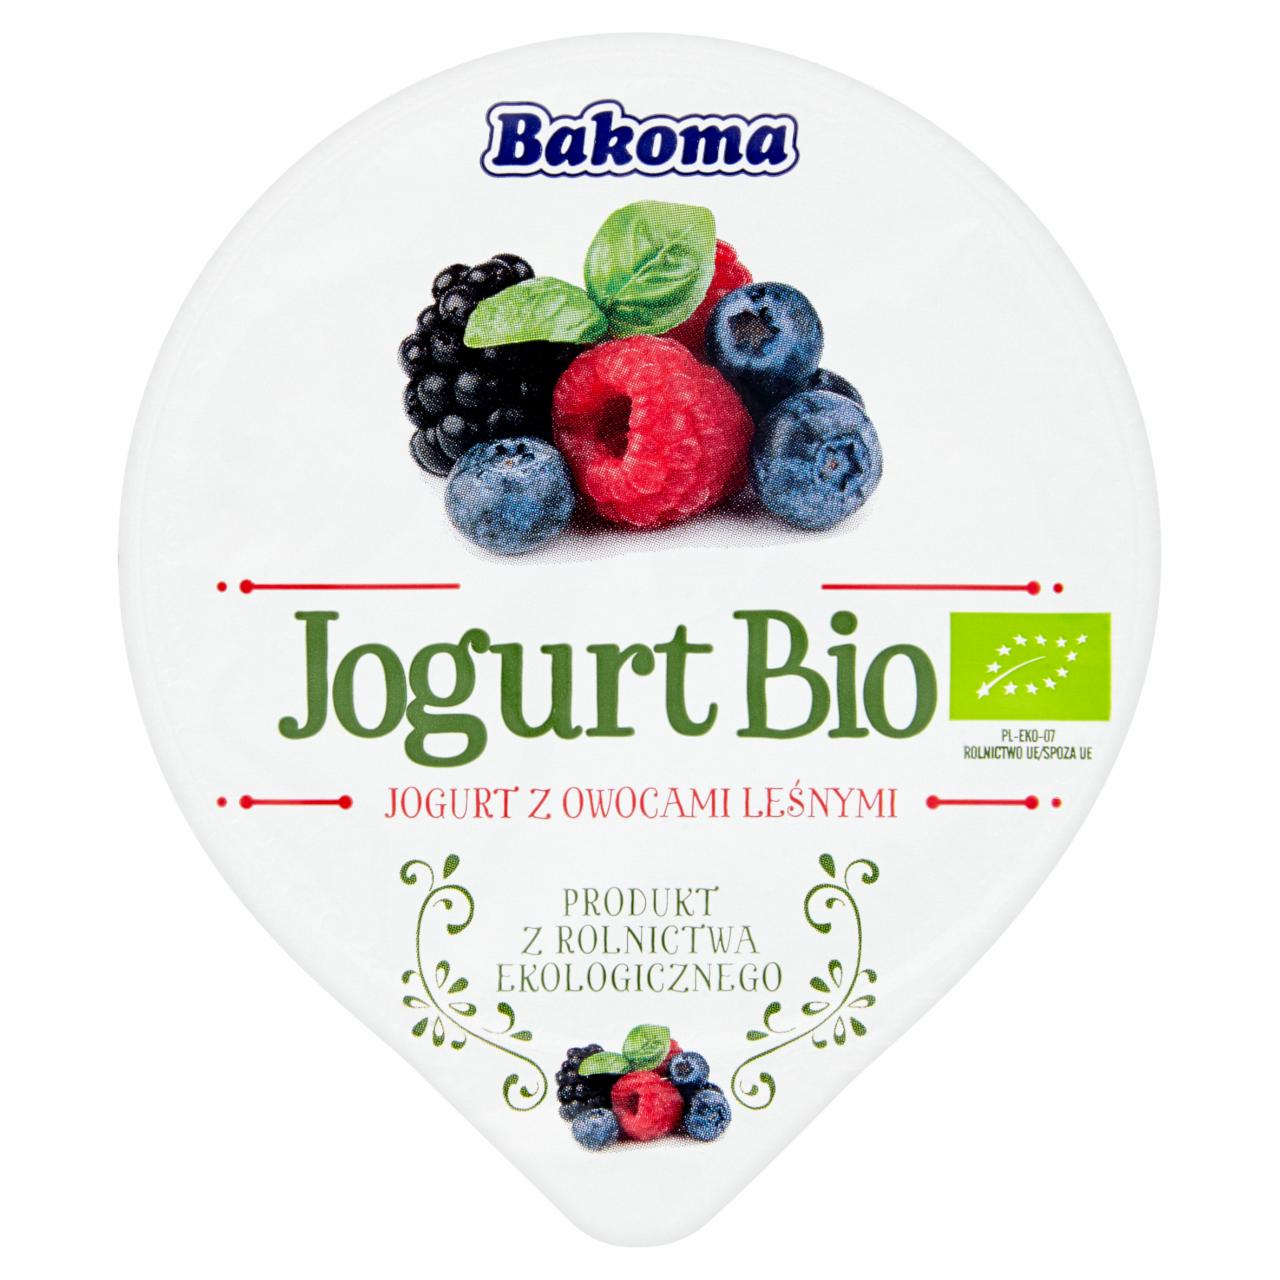 Zdjęcia - Jogurt Bio z owocami leśnymi Bakoma